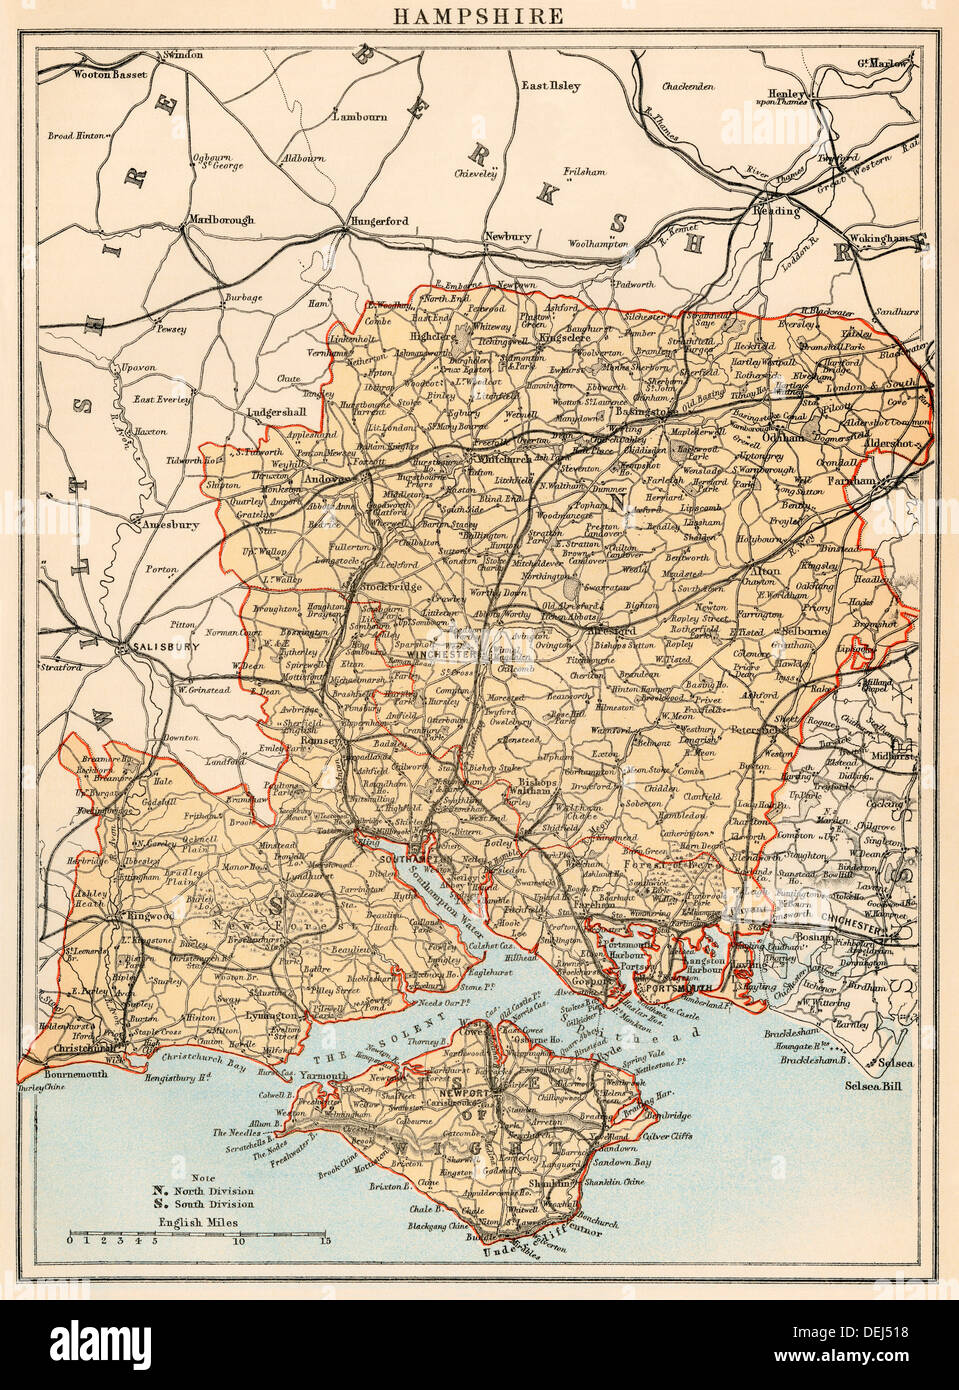 Carte de l'Hampshire, Angleterre, 1870. Lithographie couleur Banque D'Images